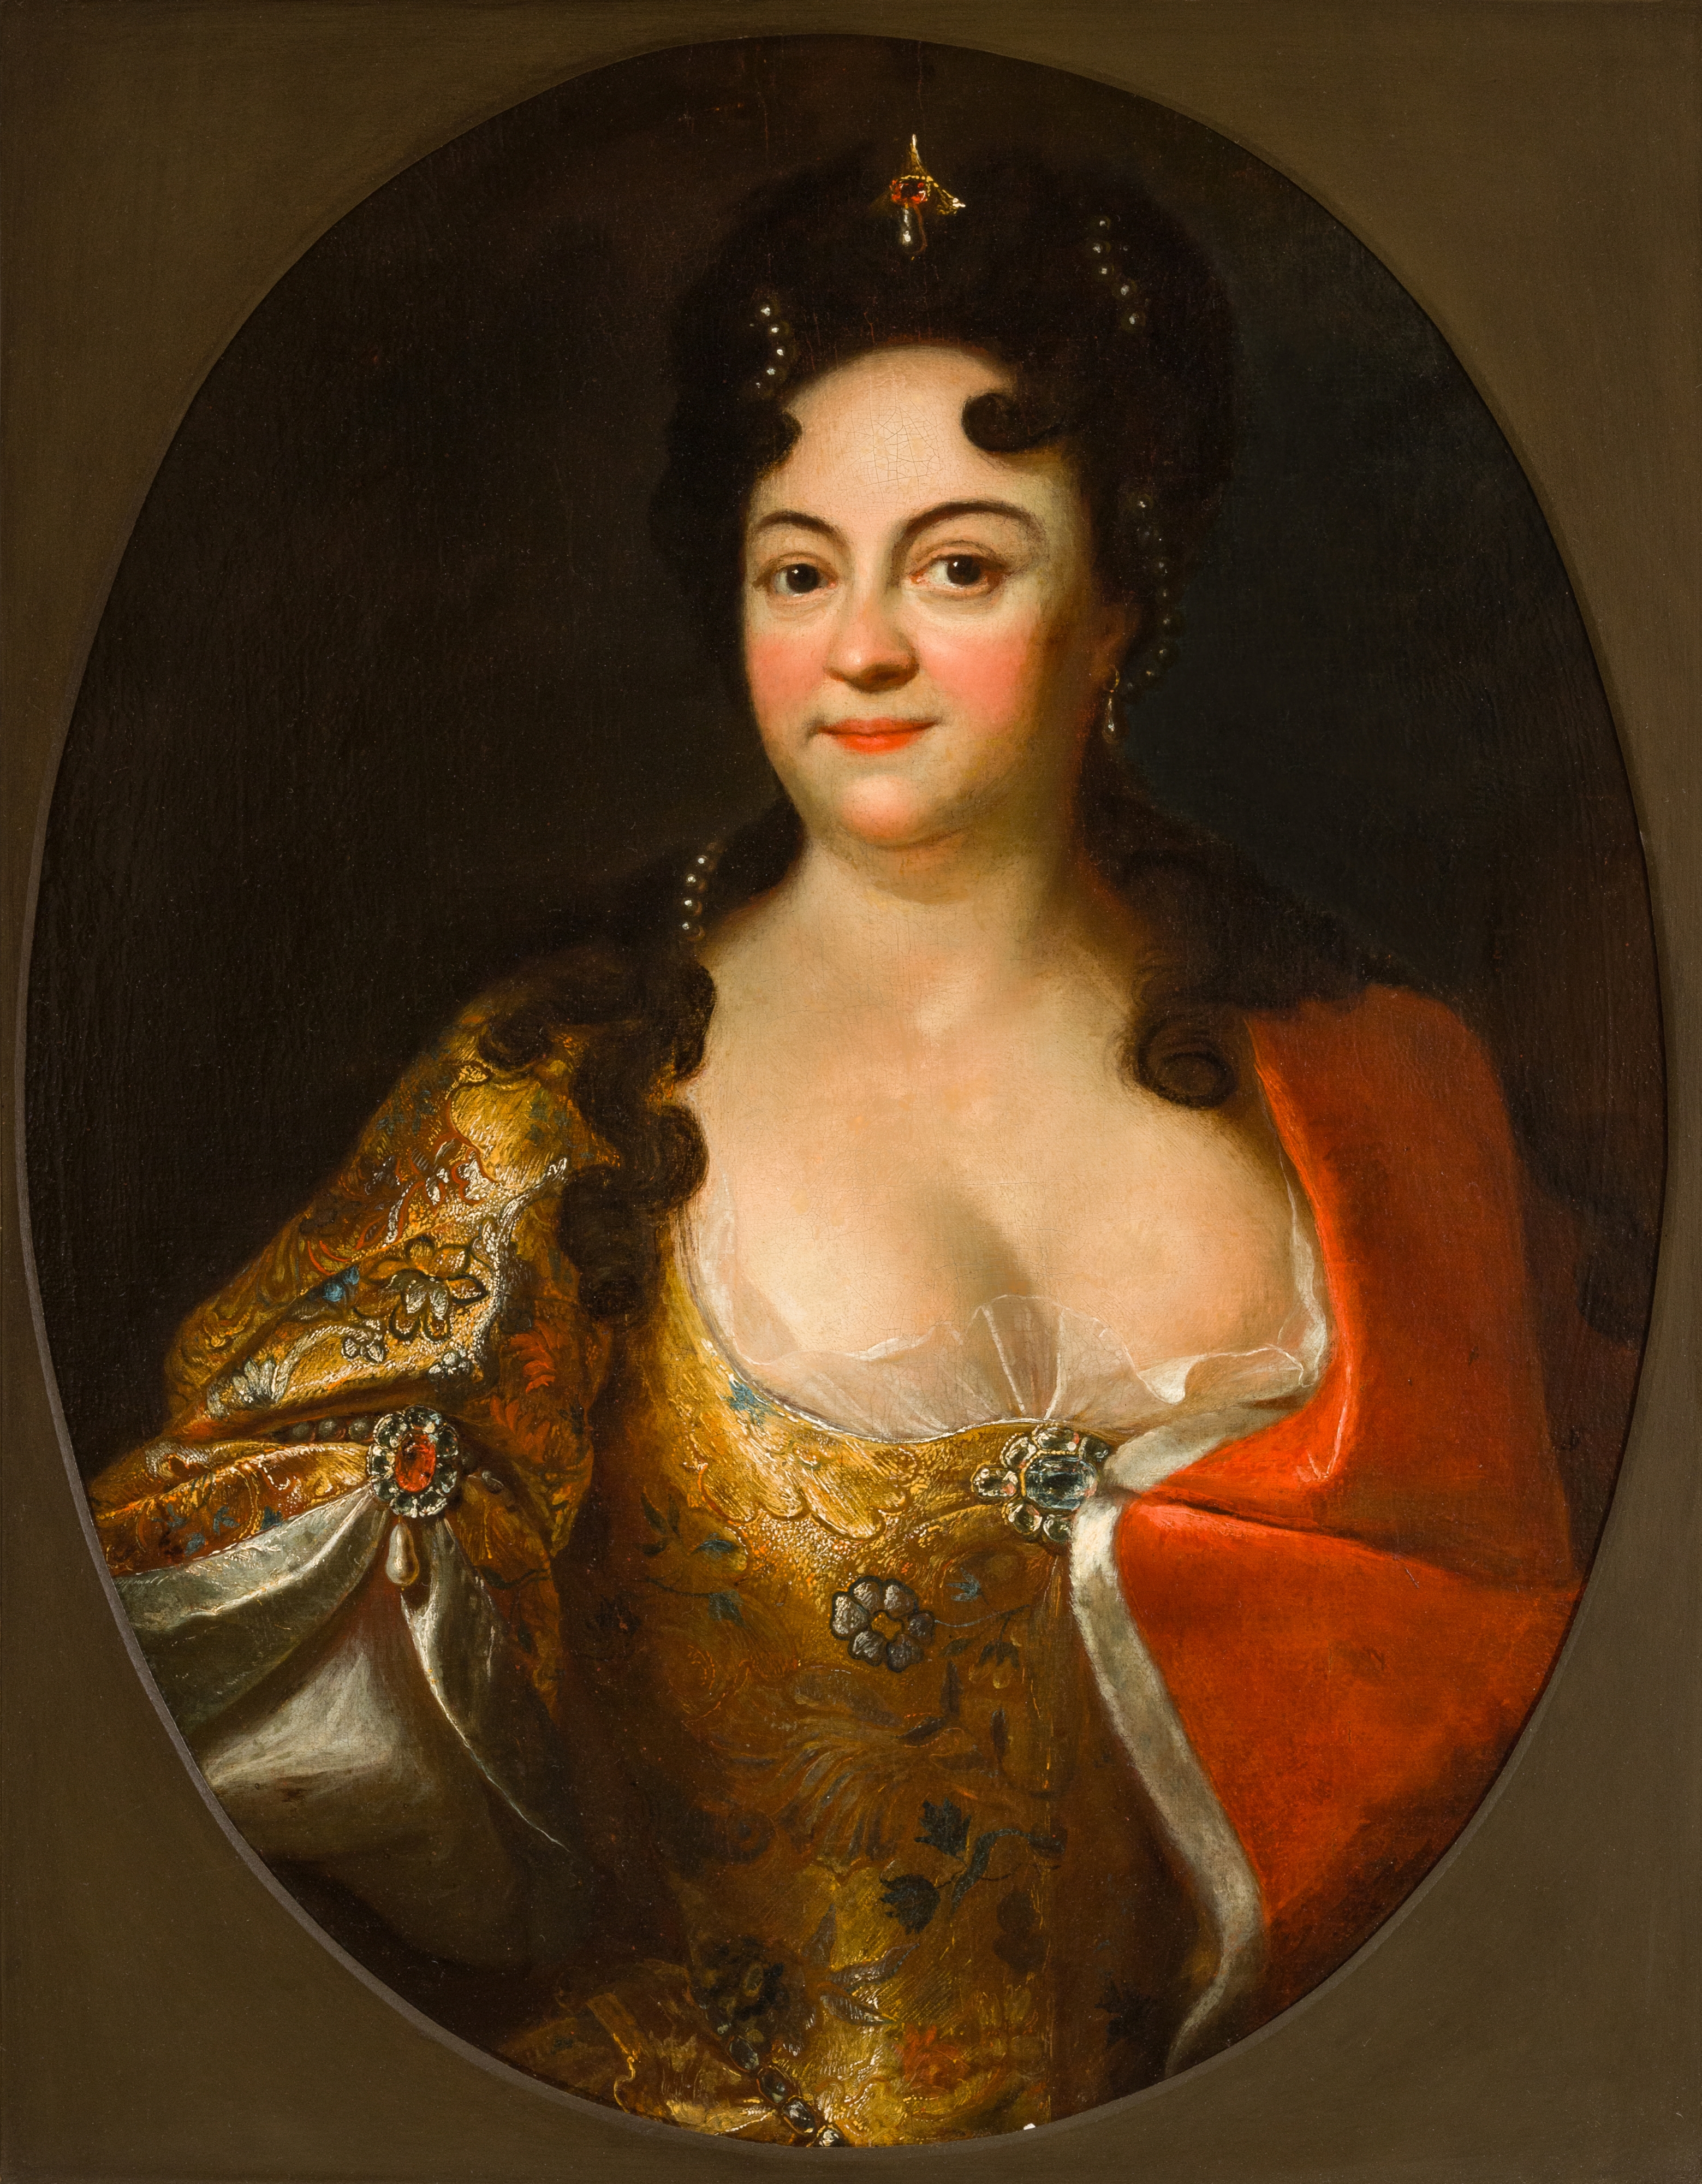 Ett målat porträtt av Aurora von Königsmarck, troligen målat tidigt 1700-tal av systern Amalia. 